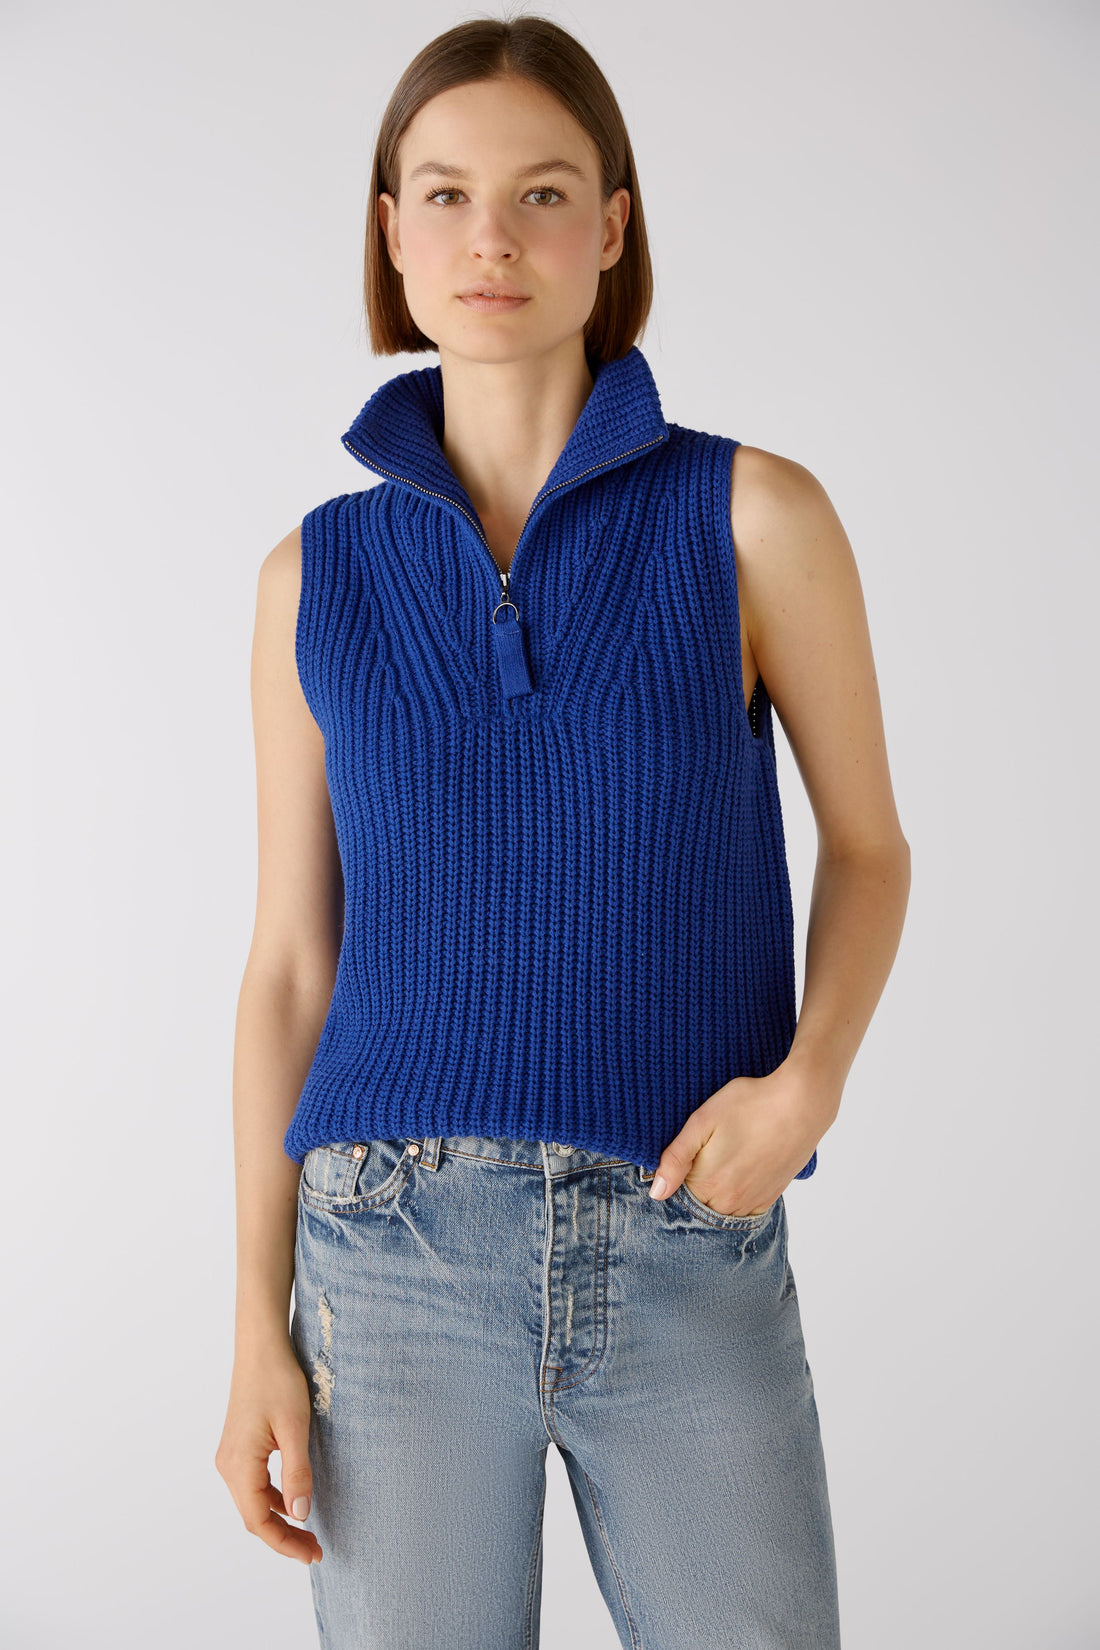 Oui -Cobalt Blue Knit Vest